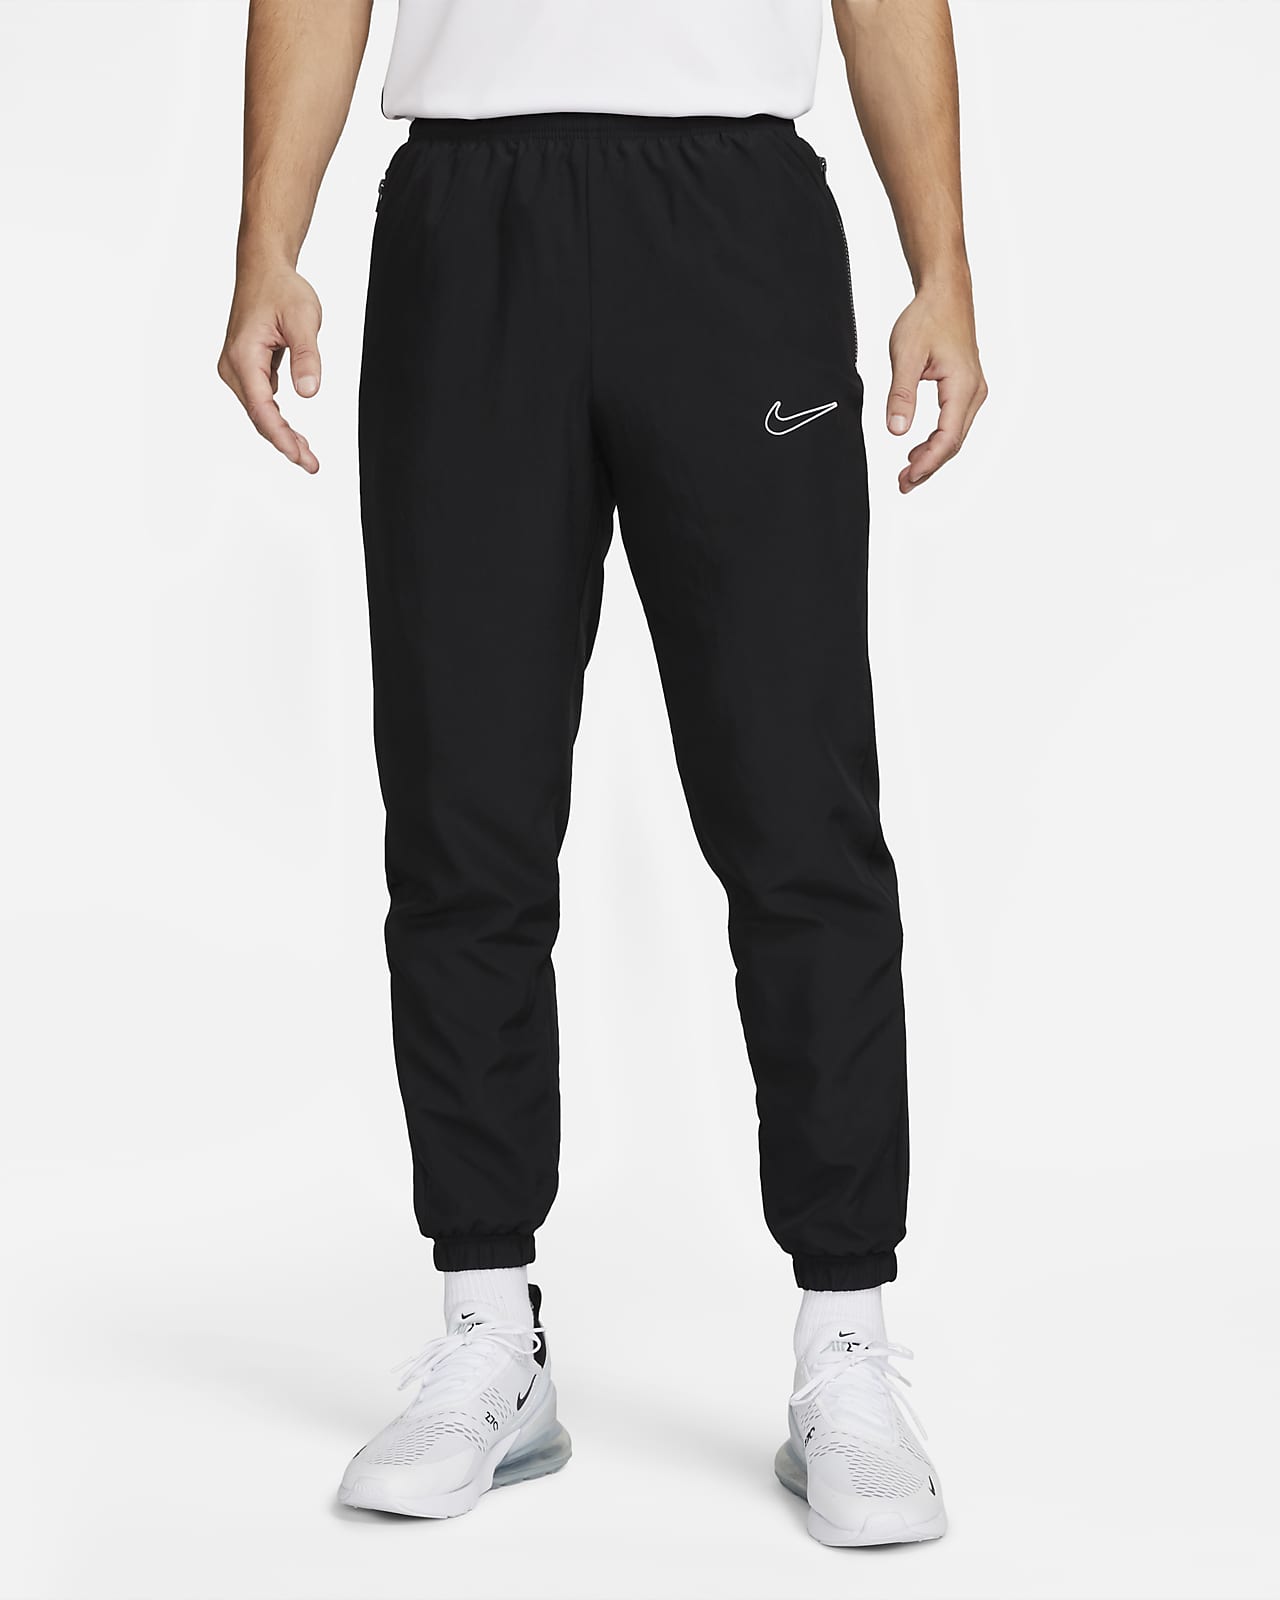 Pánské fotbalové kalhoty Dri-FIT Nike Academy